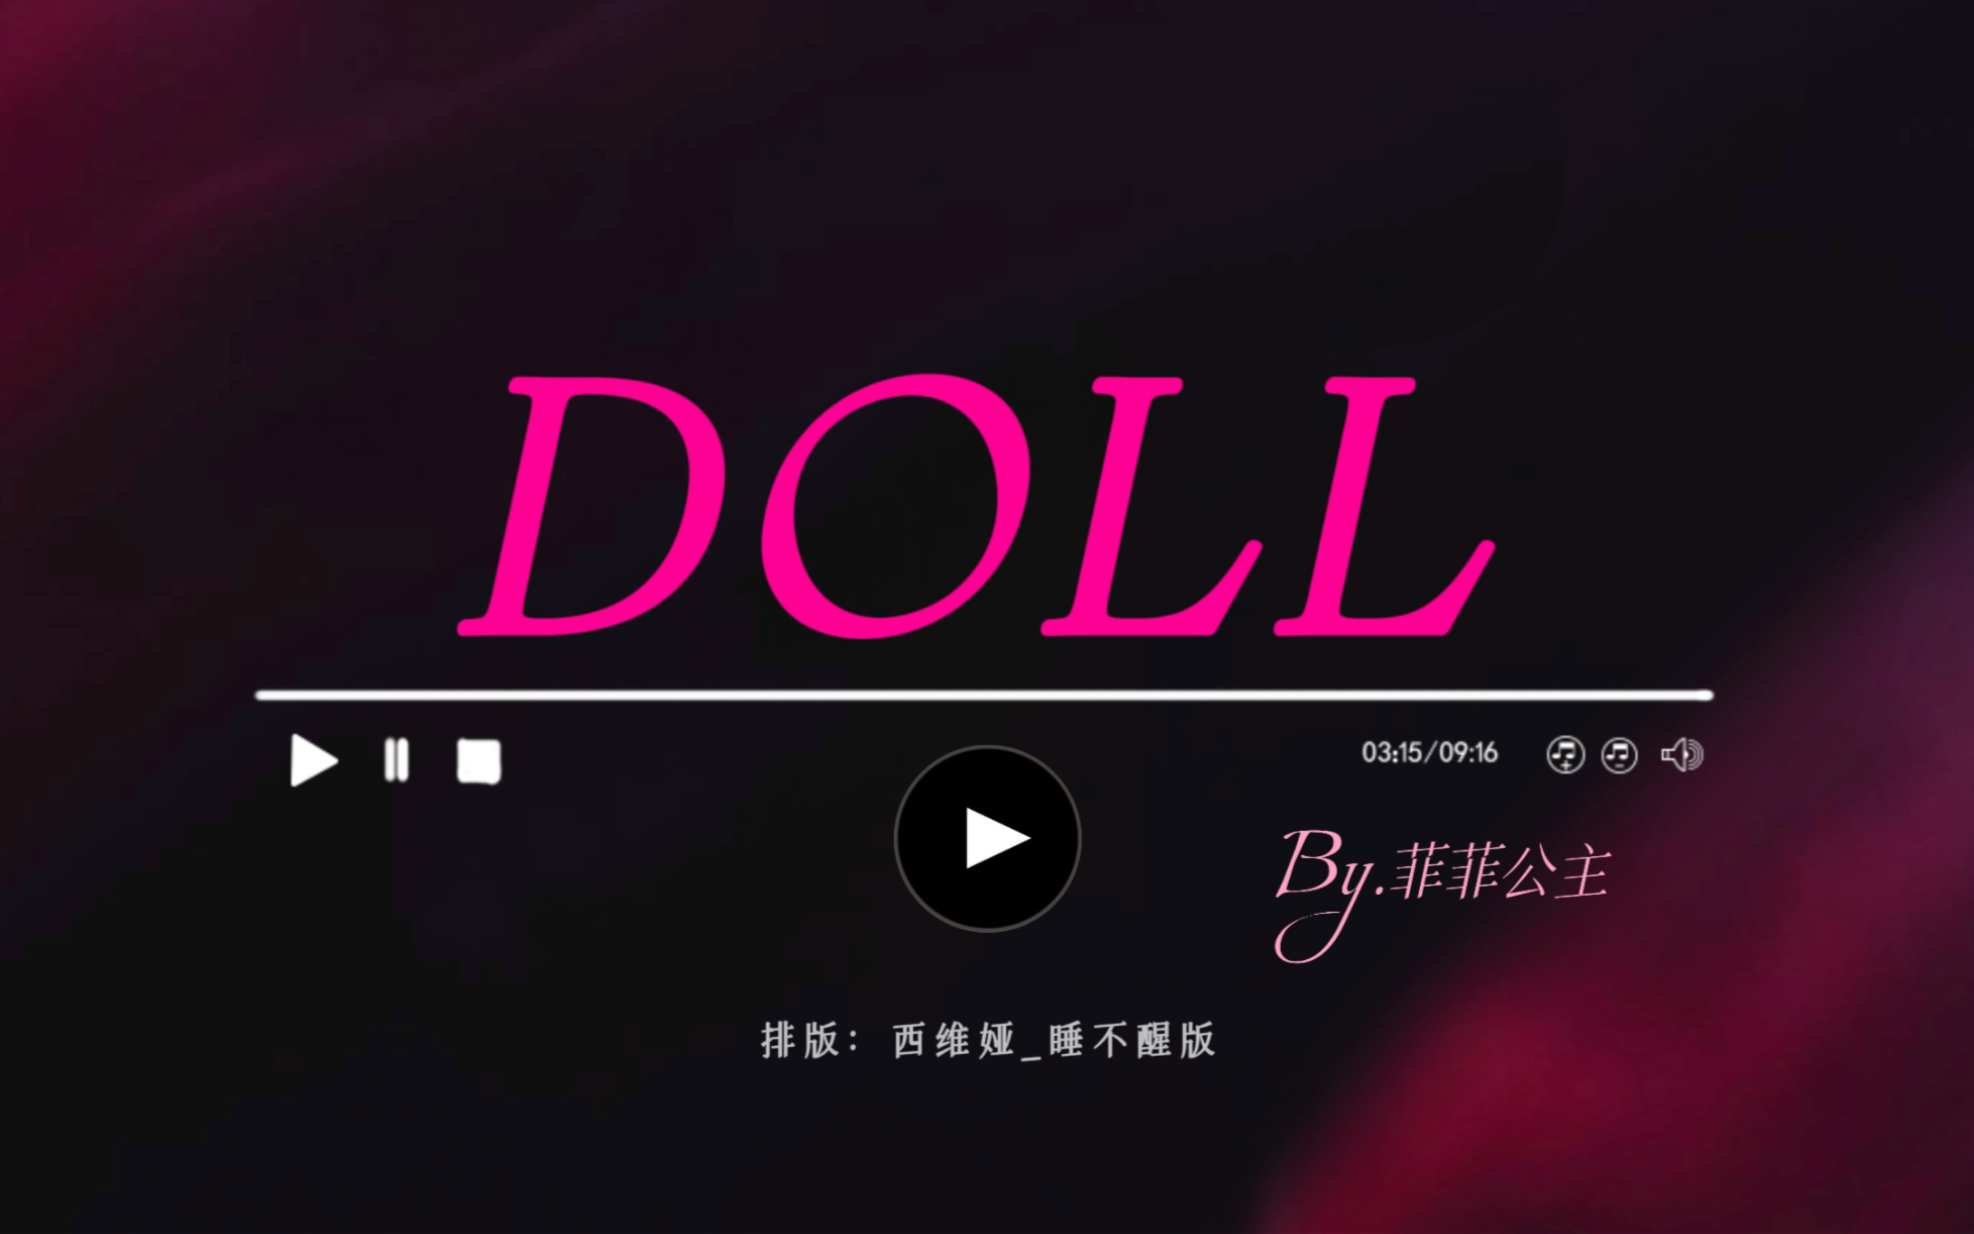 ◎动态歌词排版分享丨《Doll》“它是燎原星火，是不枯萎的我”丨拉郎cp/虐向/宿命感/氛围感/BE